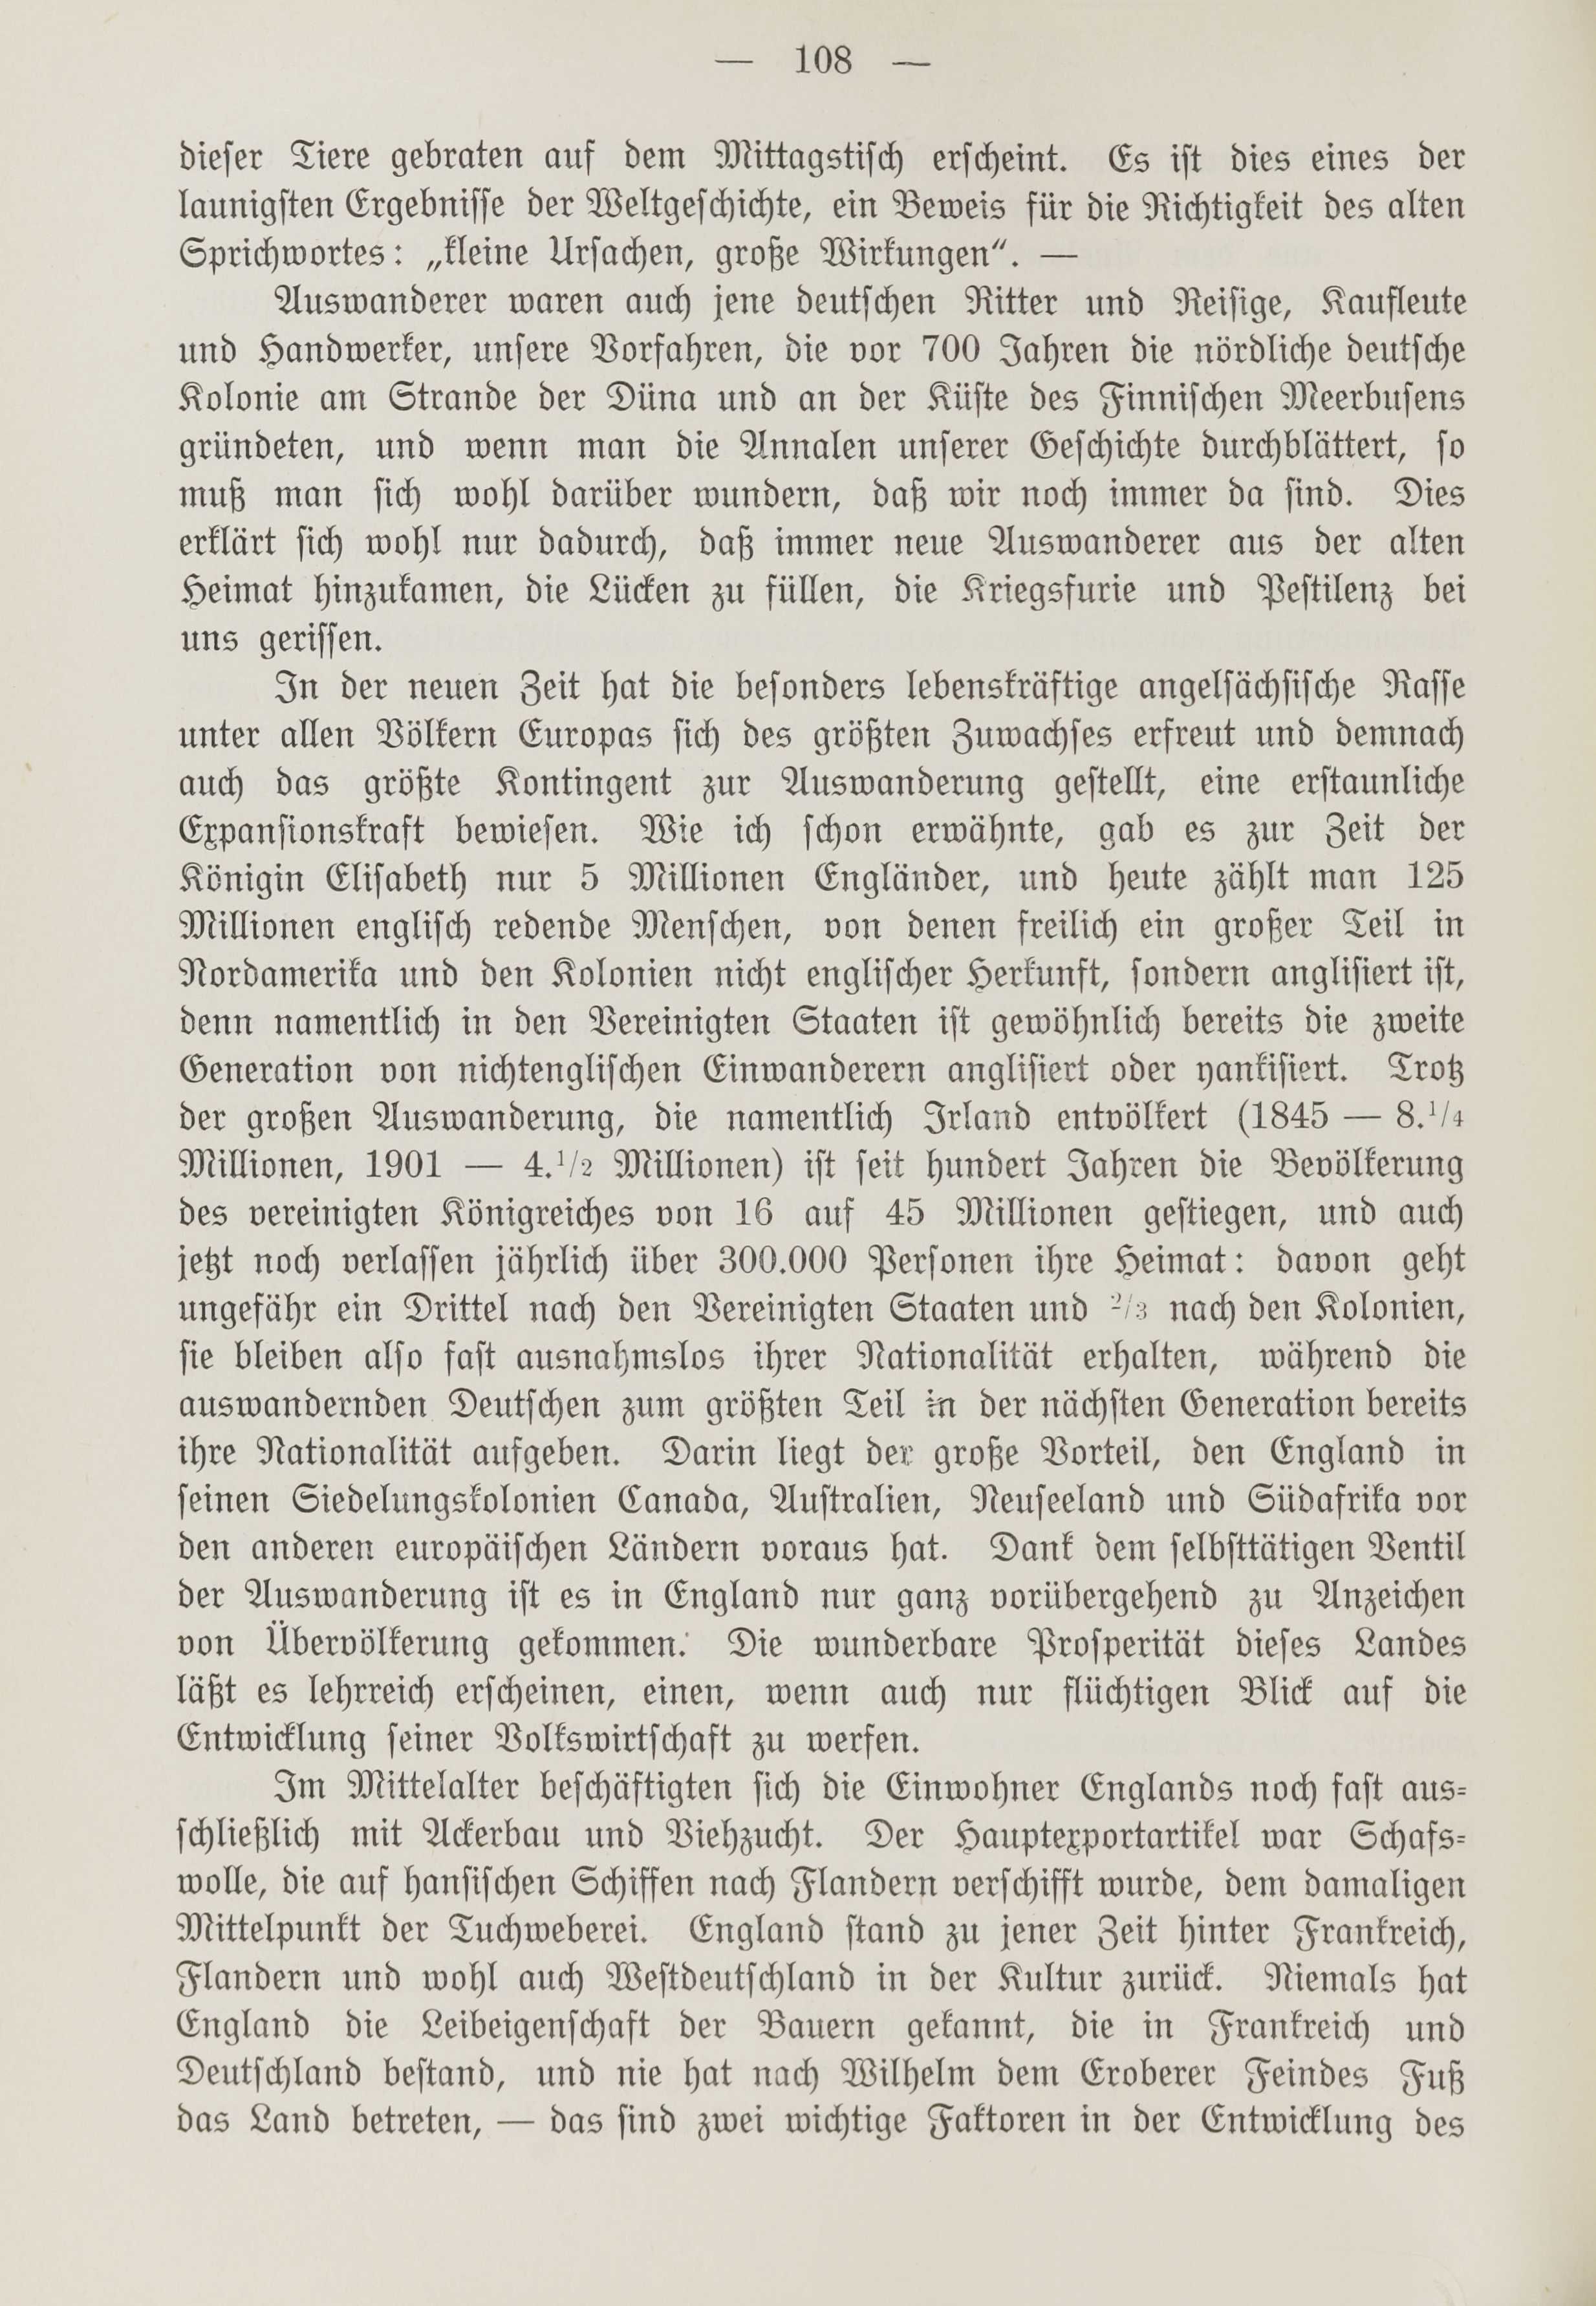 Deutsche Monatsschrift für Russland [1] (1912) | 116. (108) Main body of text